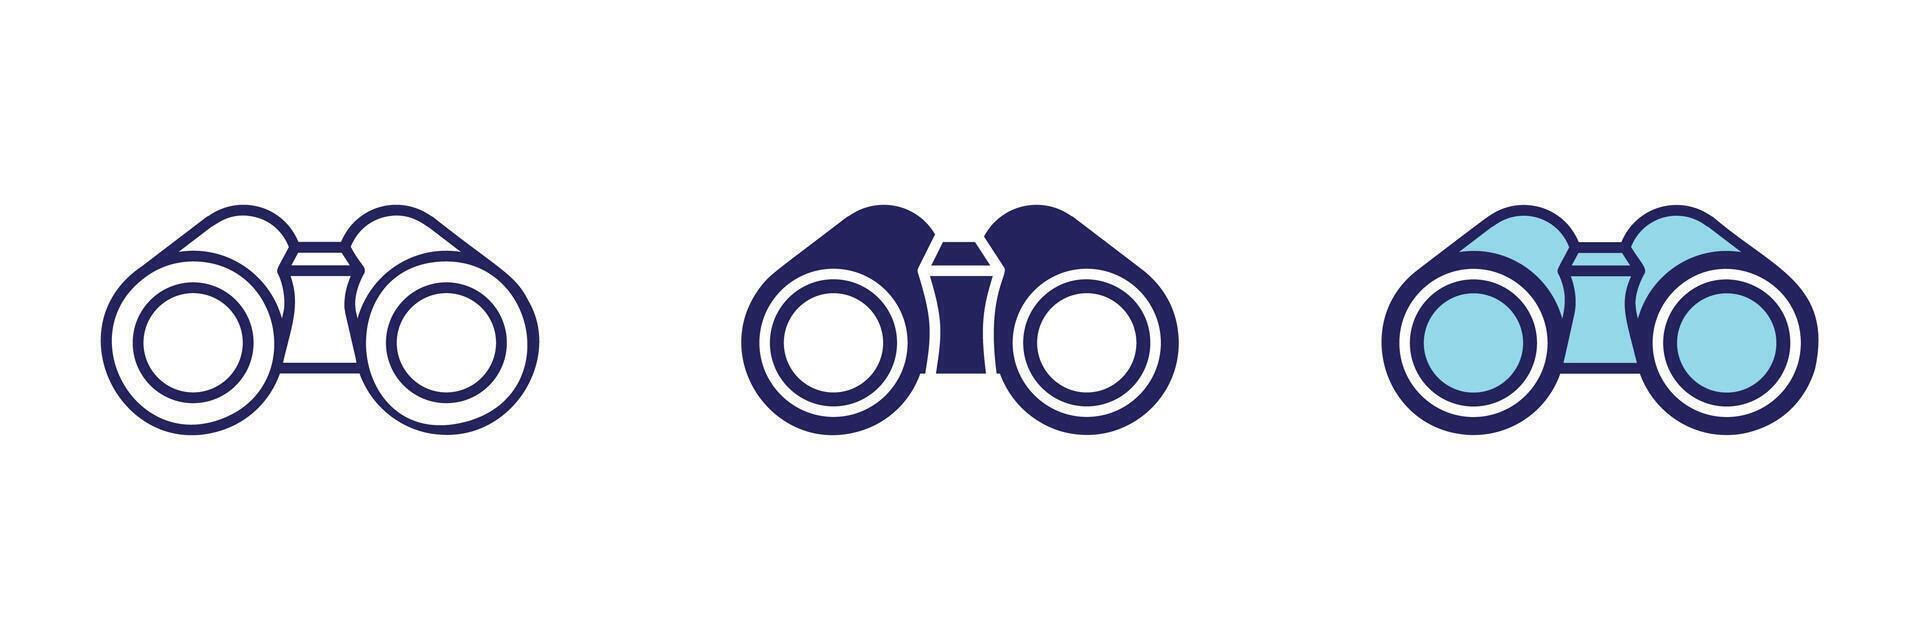 Observation Binoculars Icon - Navigation Set vector